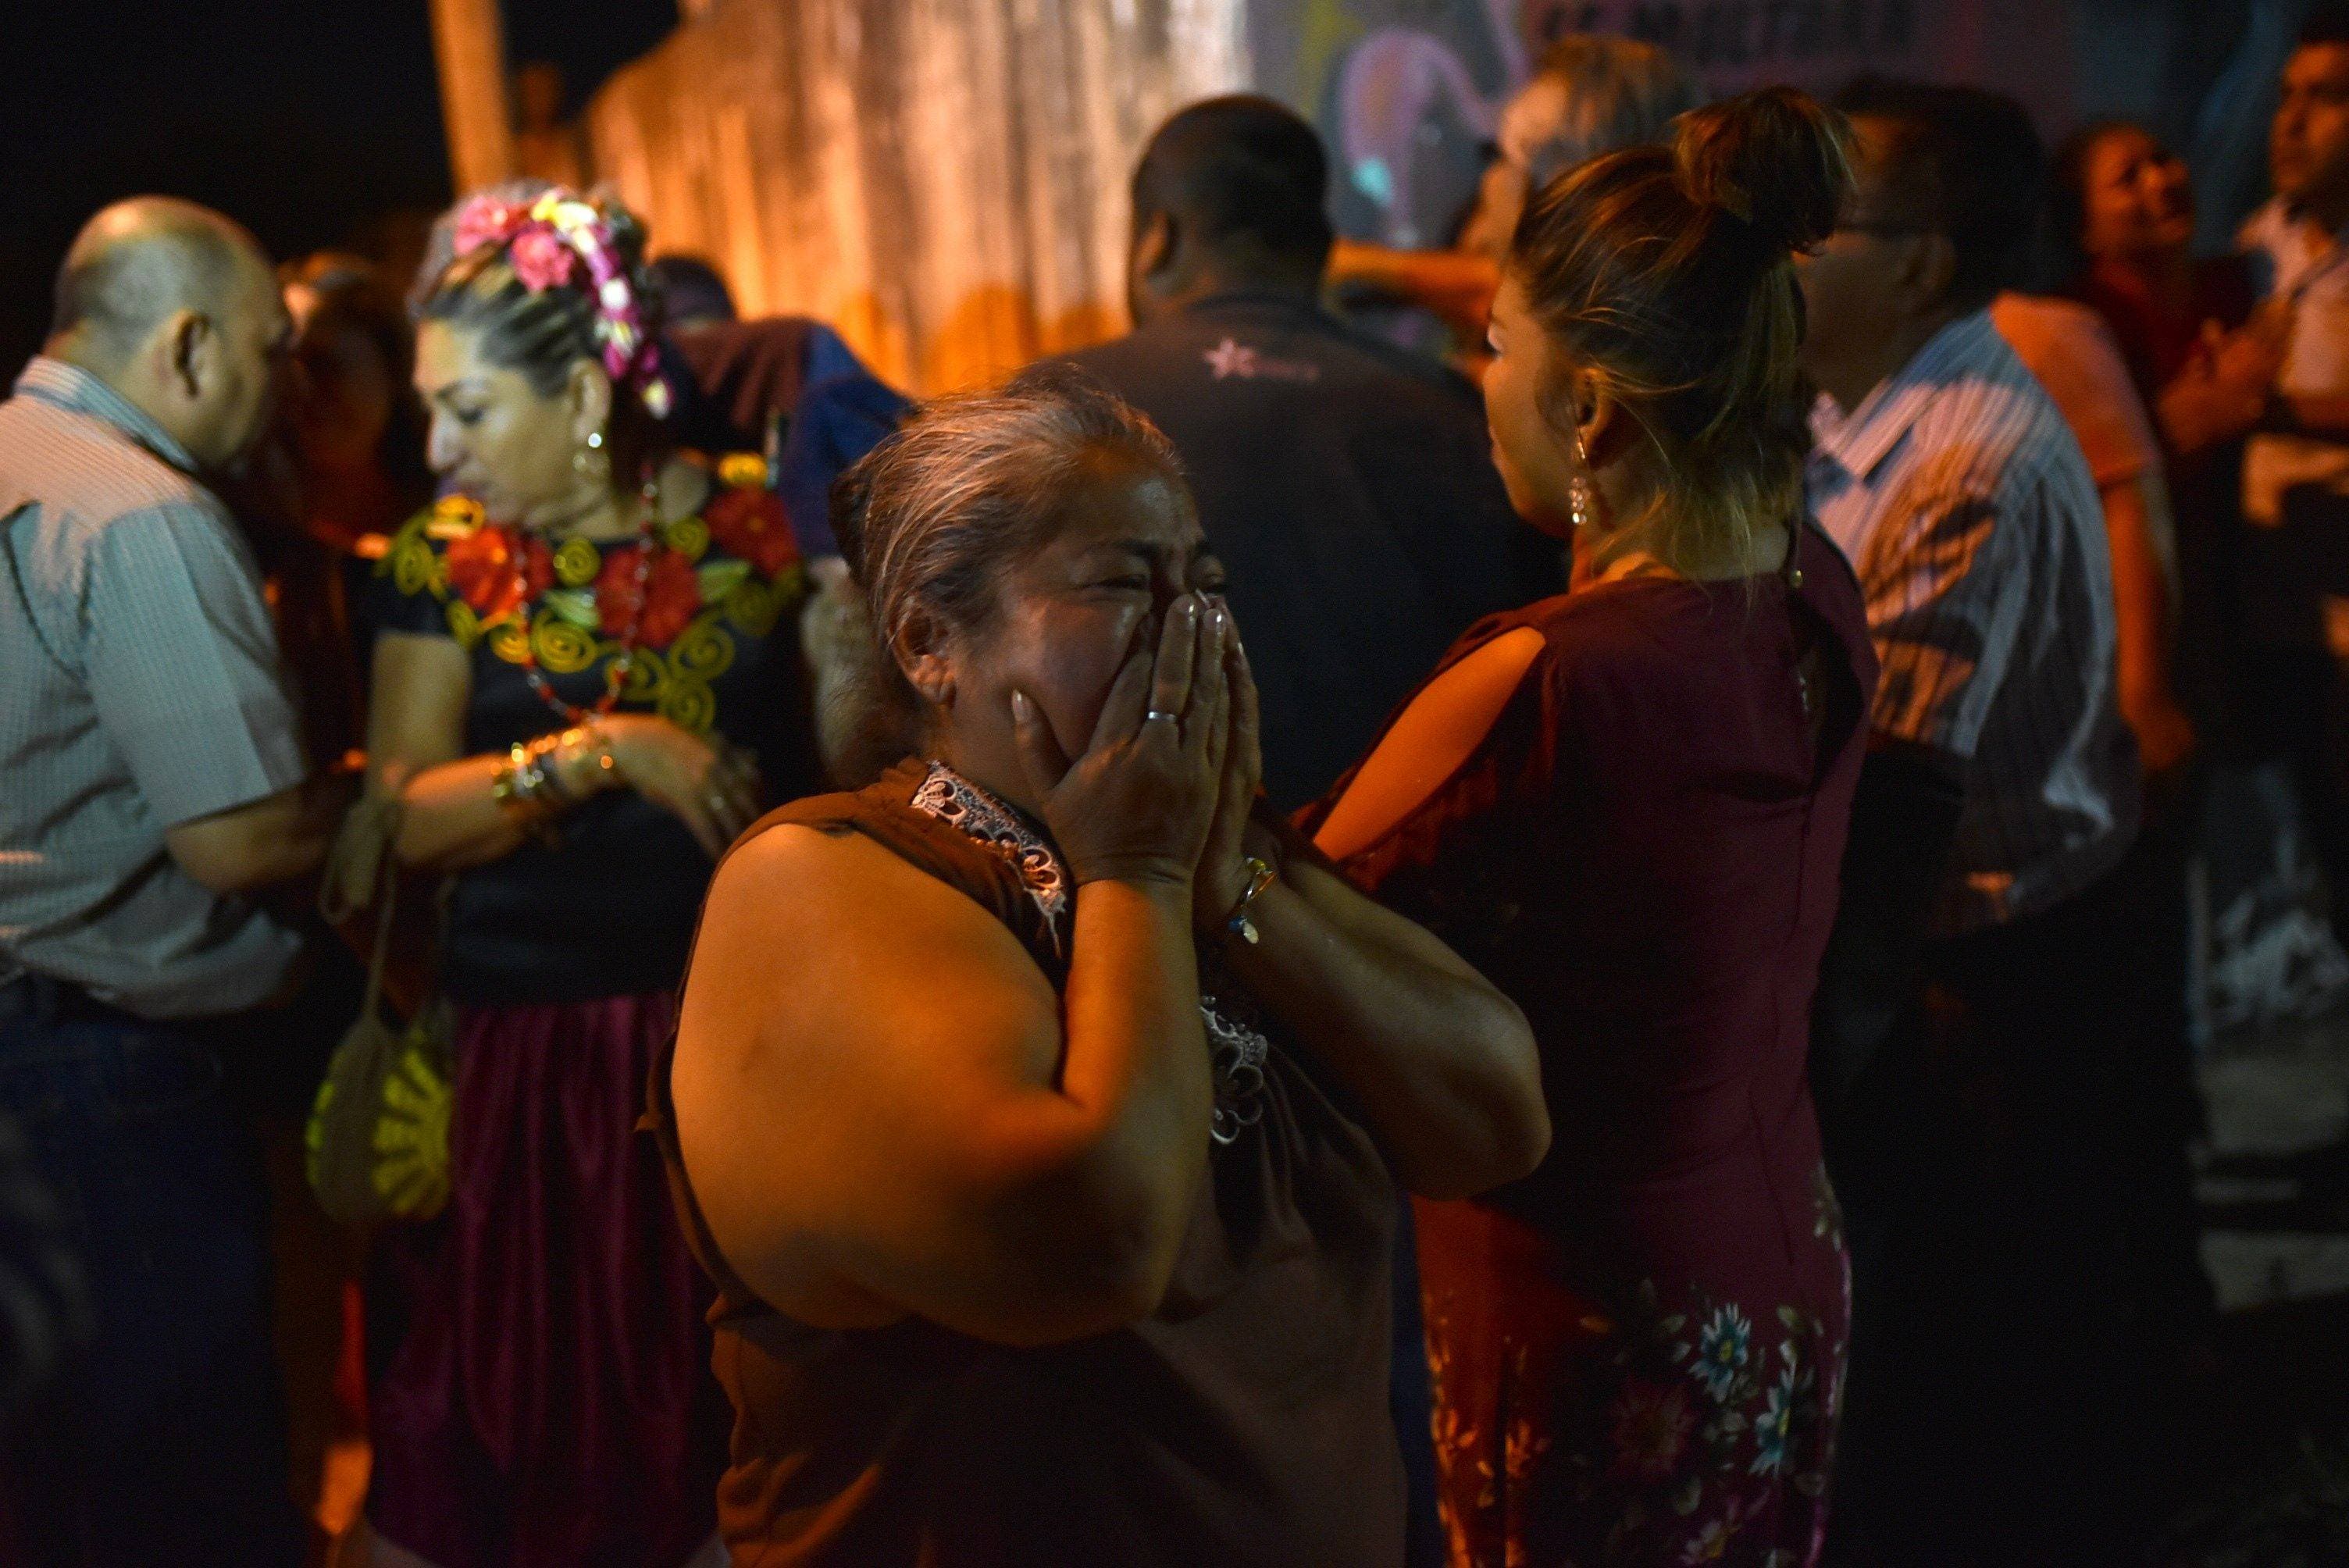 Un grupo armado irrumpe en una fiesta y mata 13 personas en México       